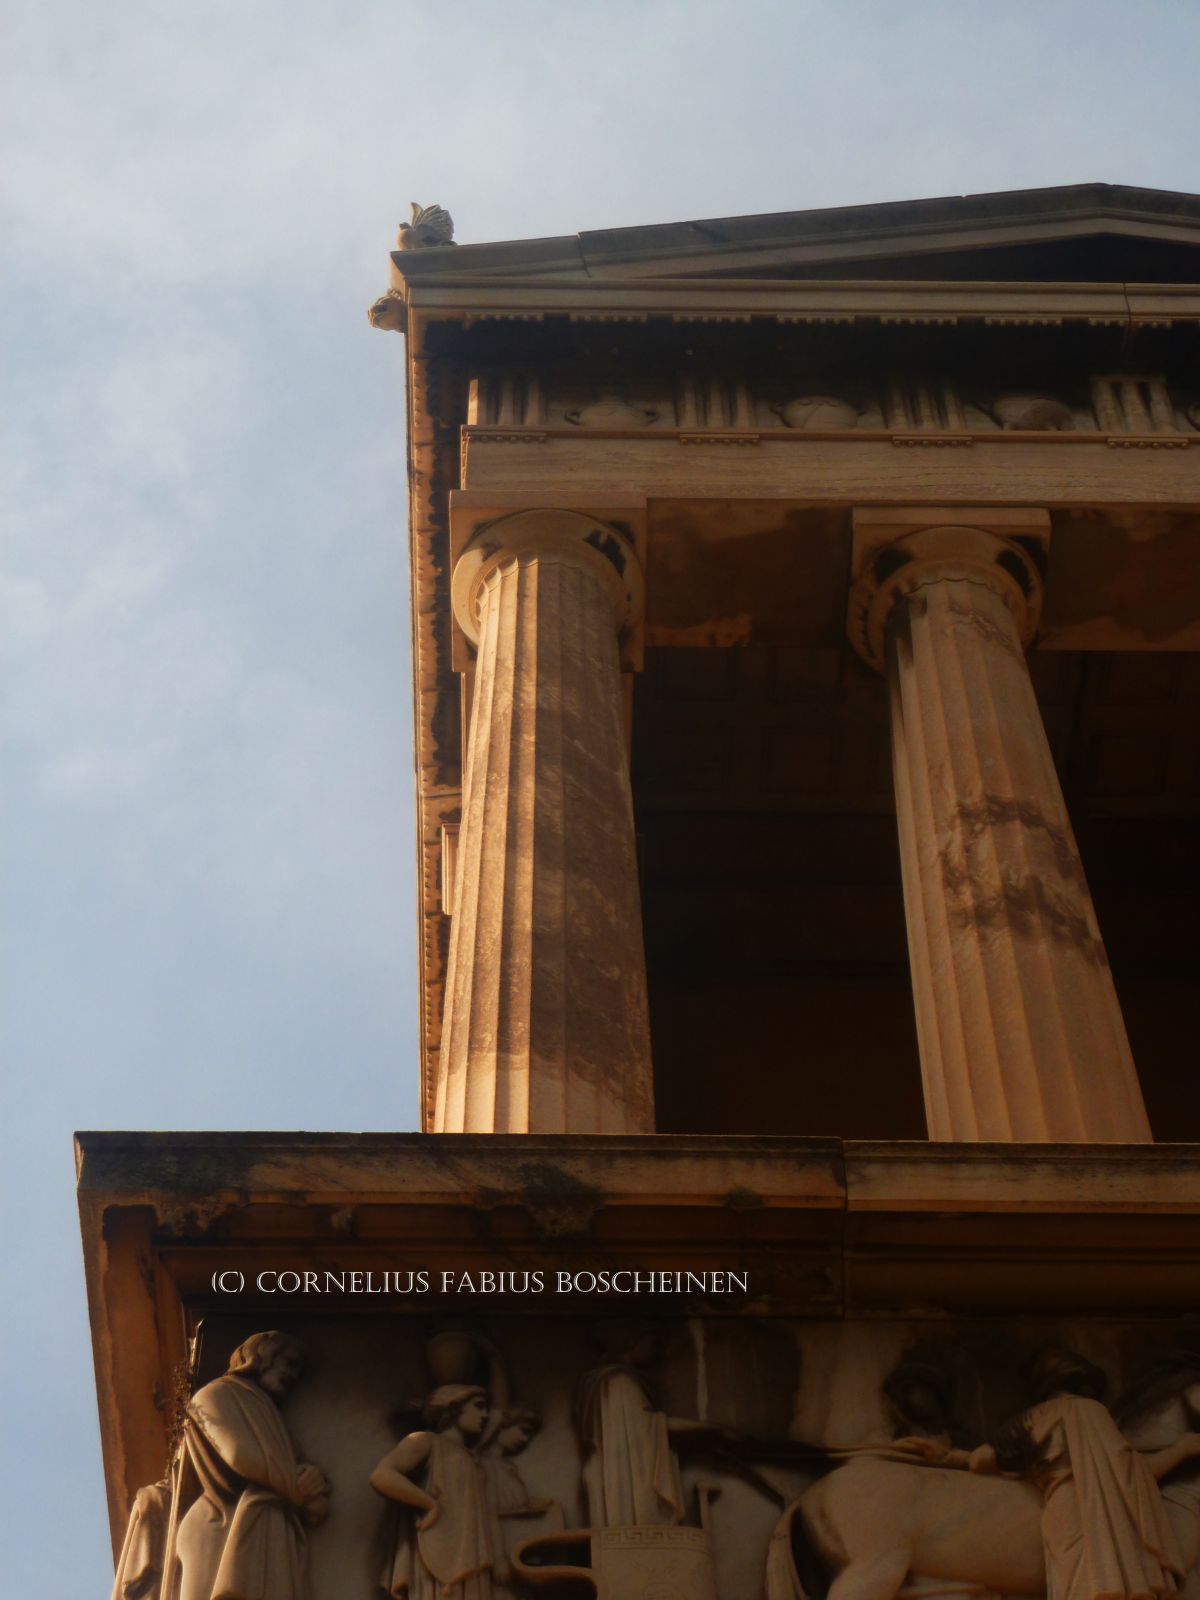 Das Schliemann Mausoleum in Athen. Erster Athener Friedhof.